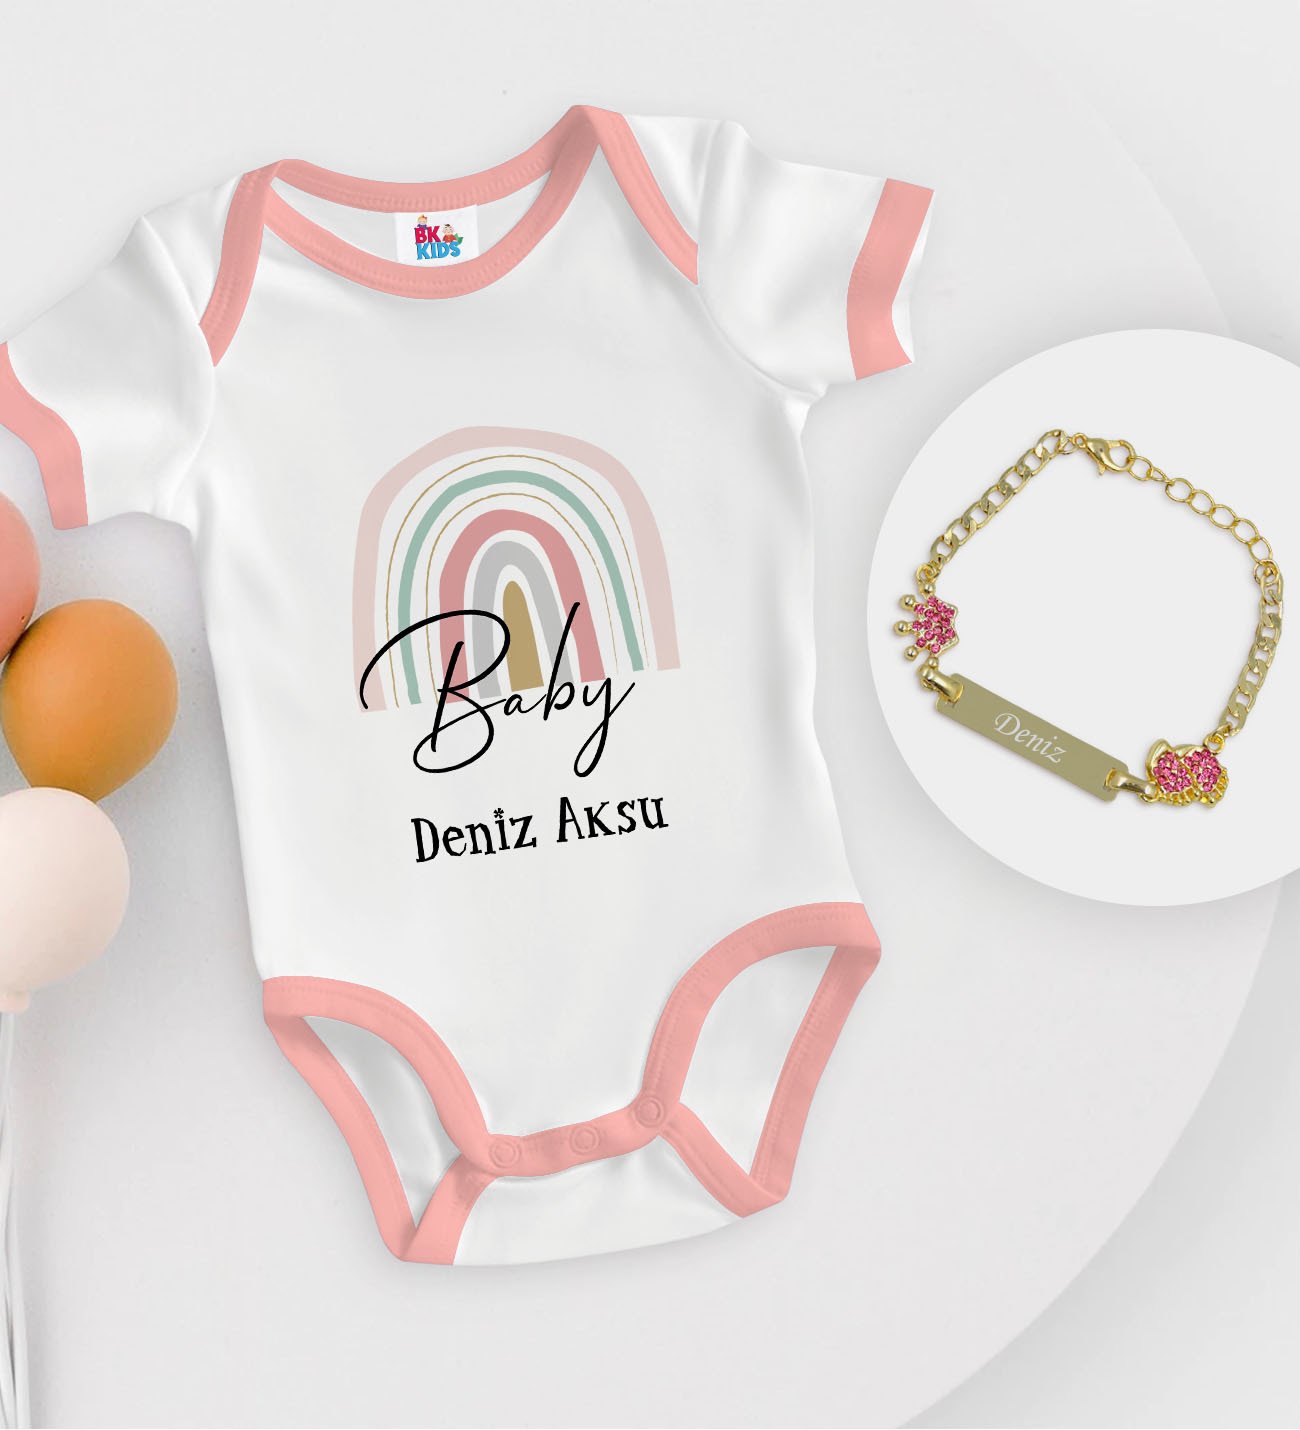 BK Kids Kişiye Özel Harfli İsimli Pembe Bebek Body Zıbın ve Kız Bebek Künyesi Hediye Seti-3